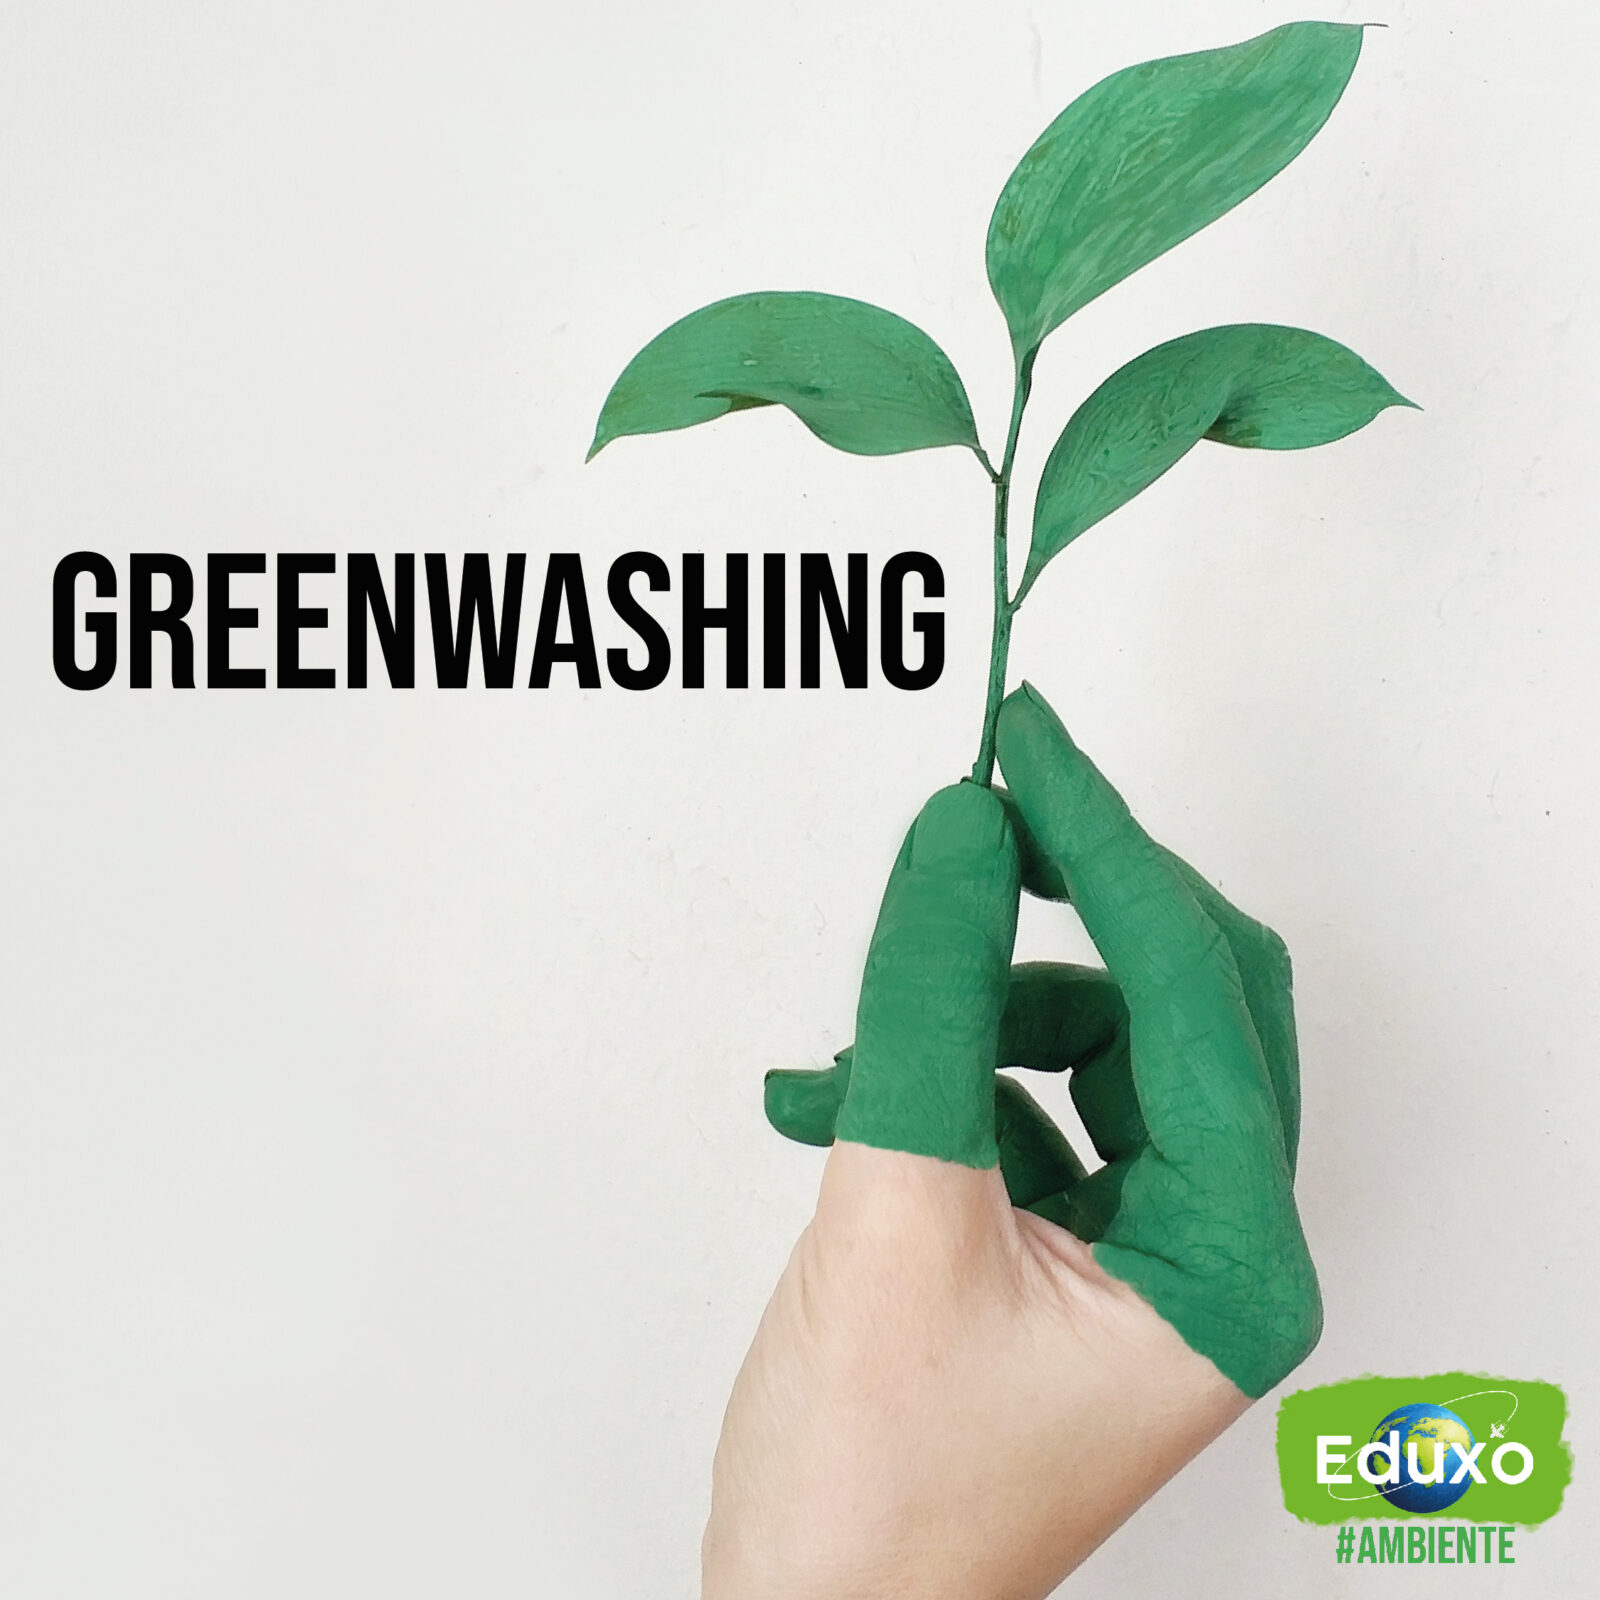 Al momento stai visualizzando Greenwashing, cos’è?